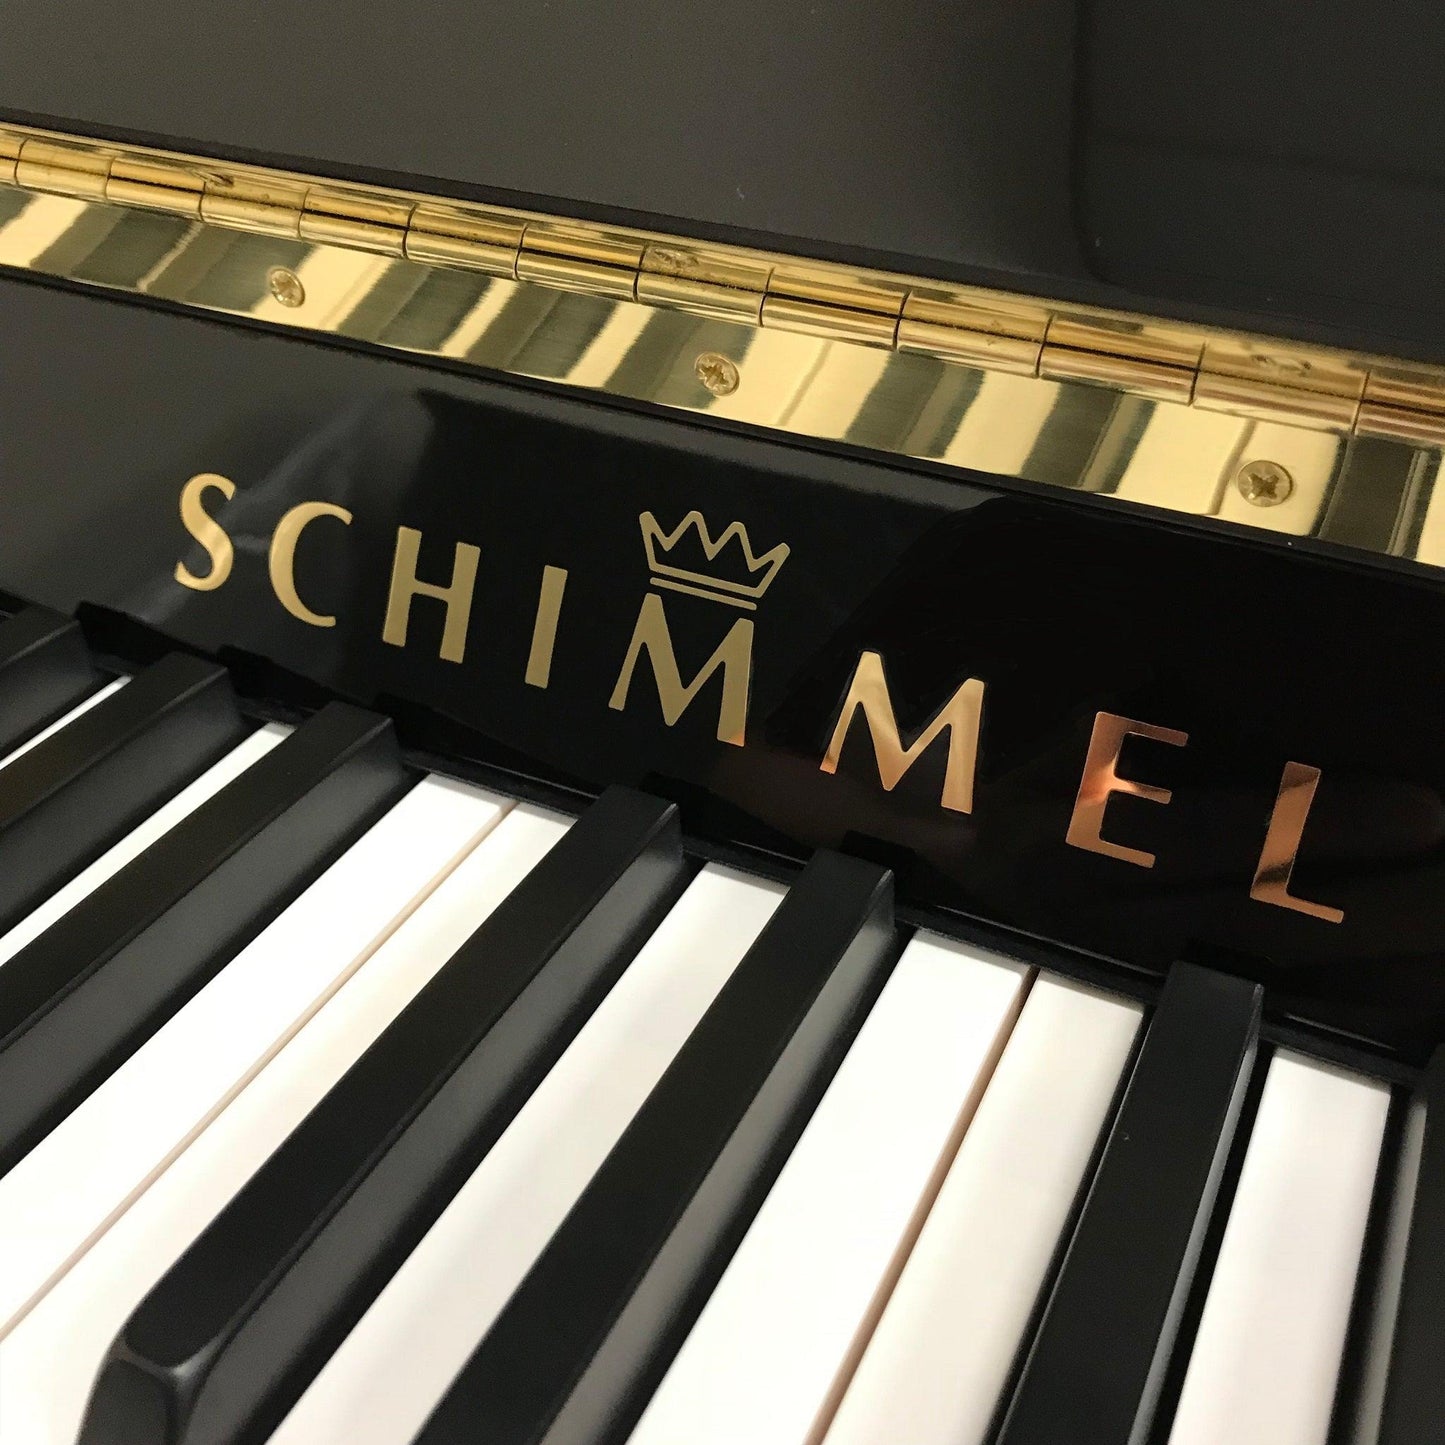 Schimmel Konzert K132 Upright Piano - Orpheus Music